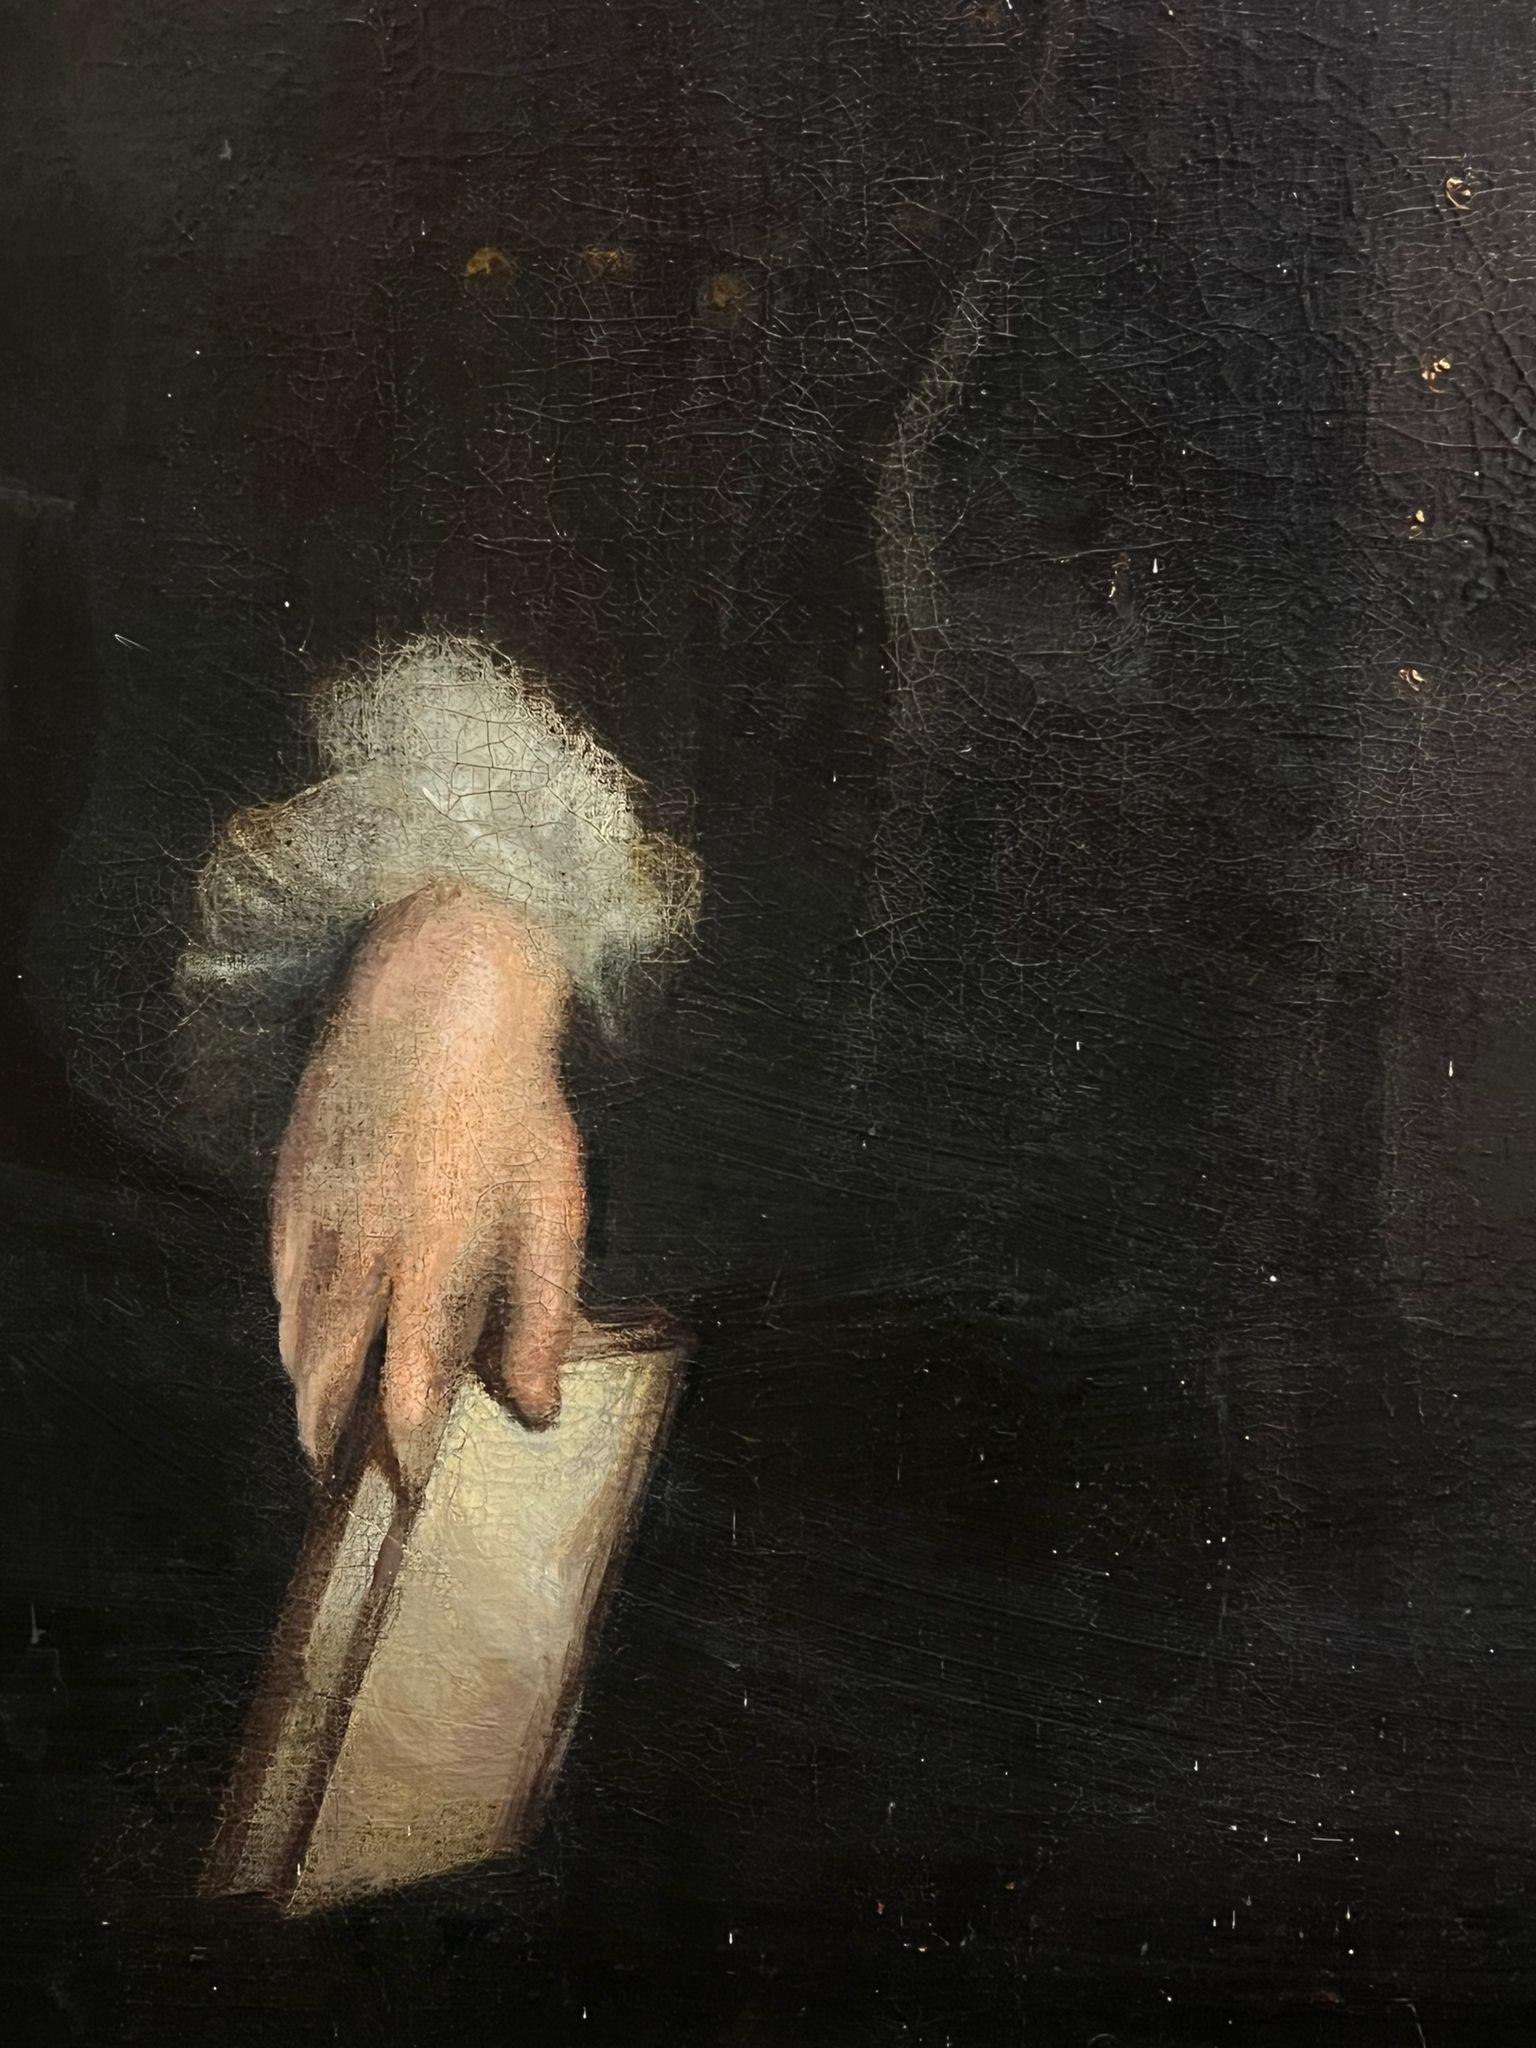 Porträt eines aristokratischen Gentleman
Britischer Künstler, erste Hälfte 18. Jahrhundert
Öl auf Leinwand, ungerahmt
Leinwand: 50 x 40 Zoll
Provenienz: Privatsammlung, Dorset, England
Zustand: einige kleinere Oberflächenabschürfungen, aber